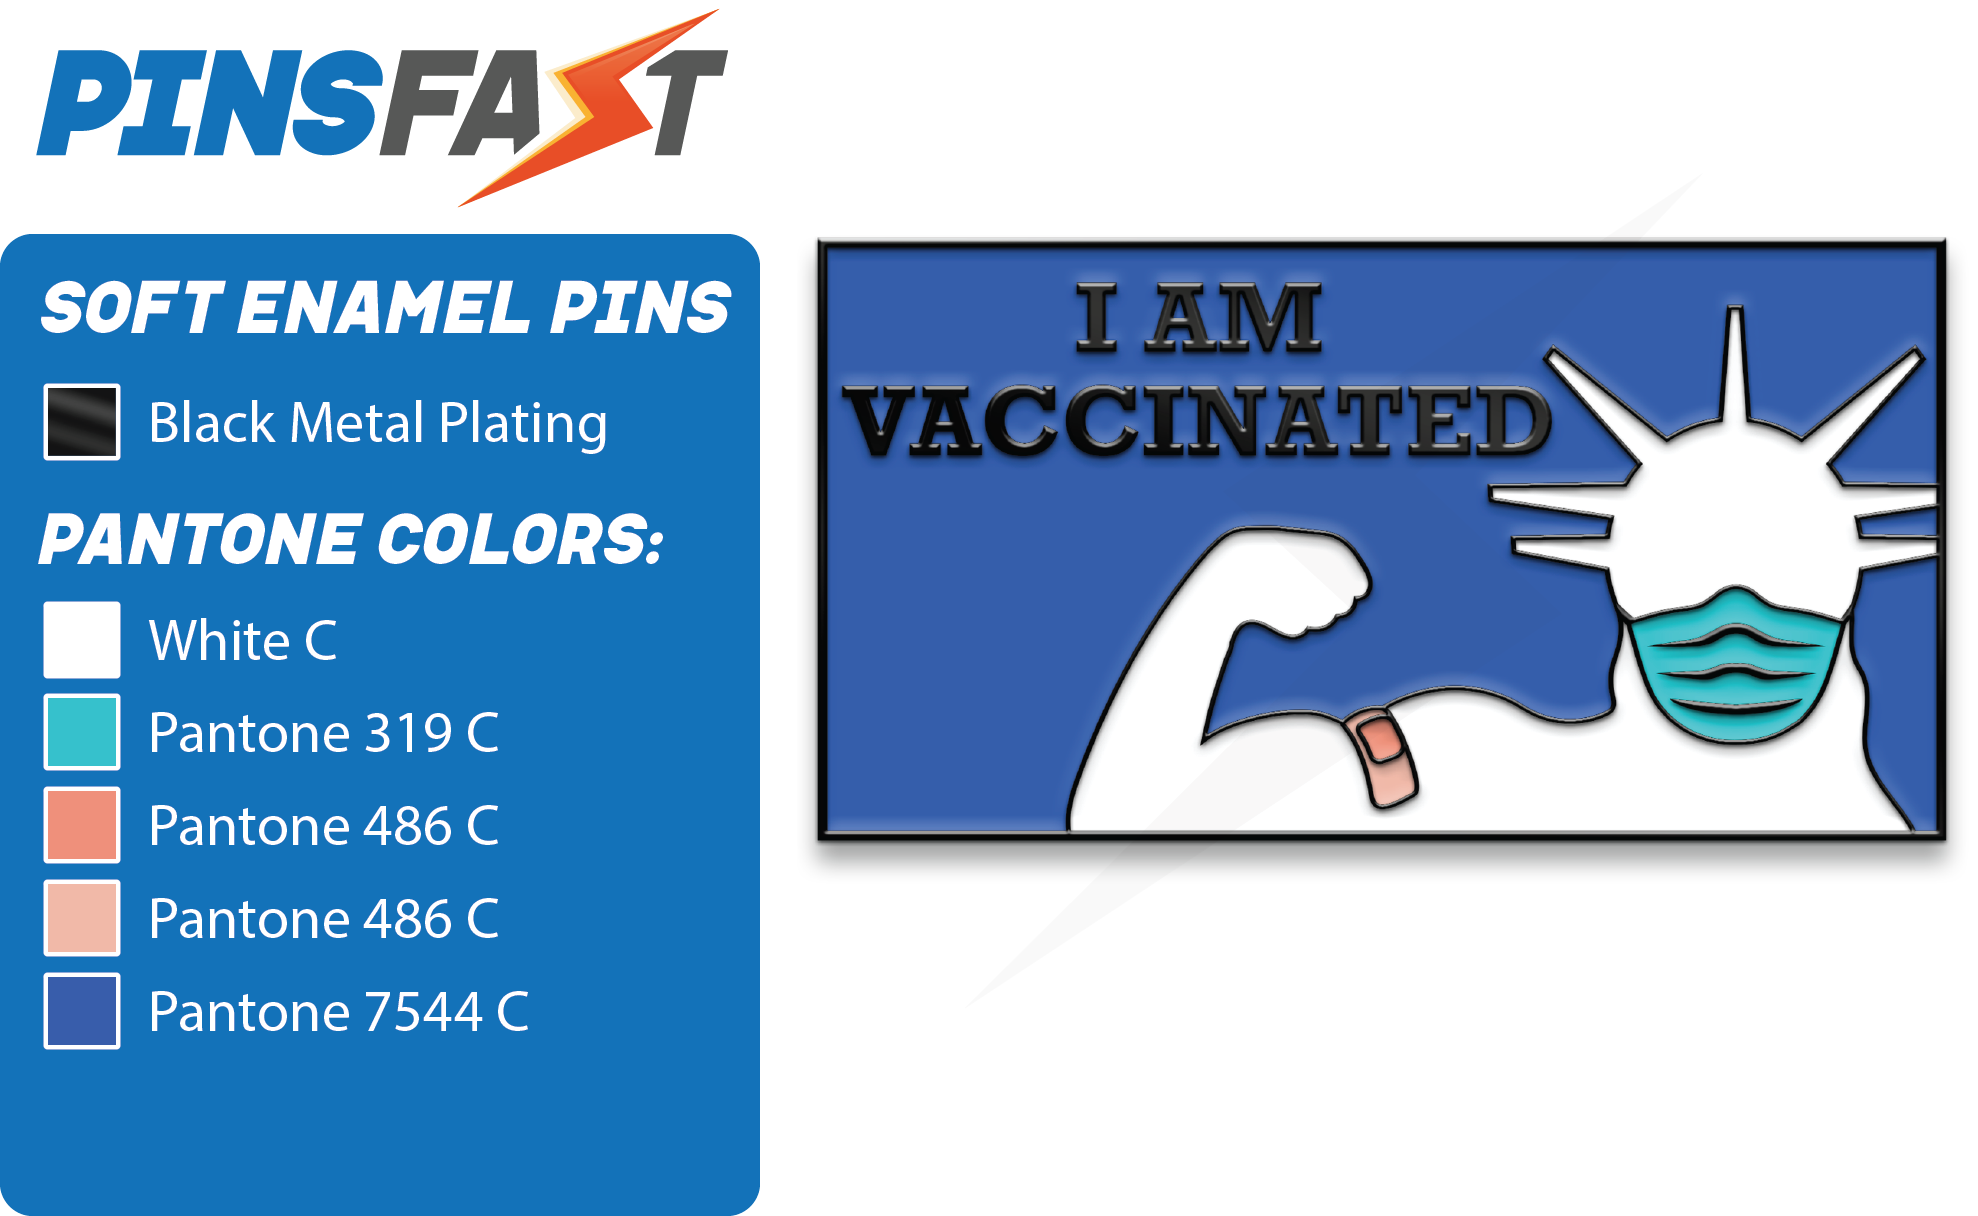 NYC Vaccinated Pins